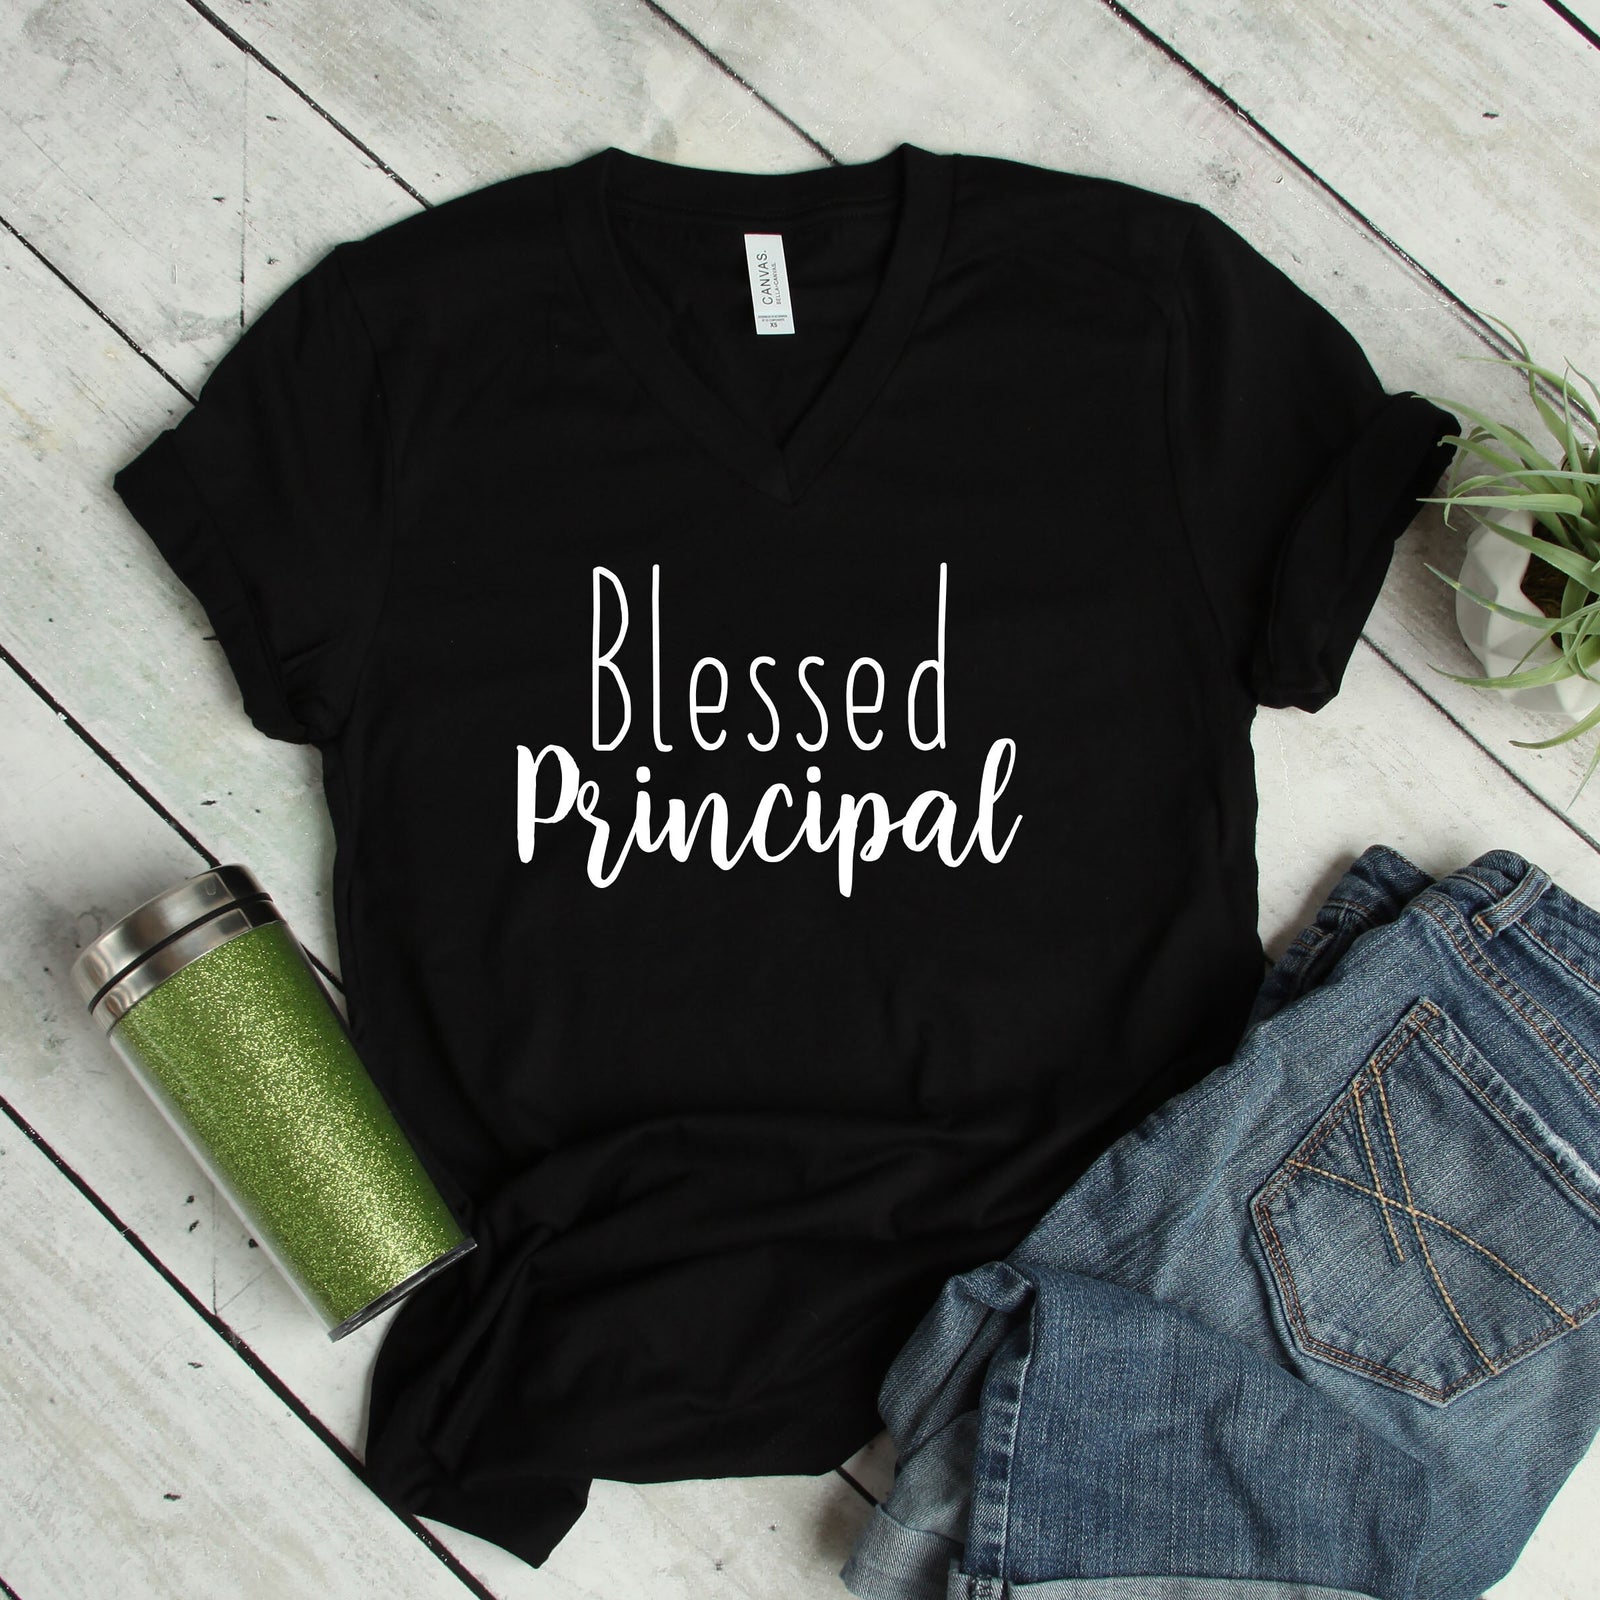 Blessed Principal T Shirt - Teacher Shirts - School Shirts